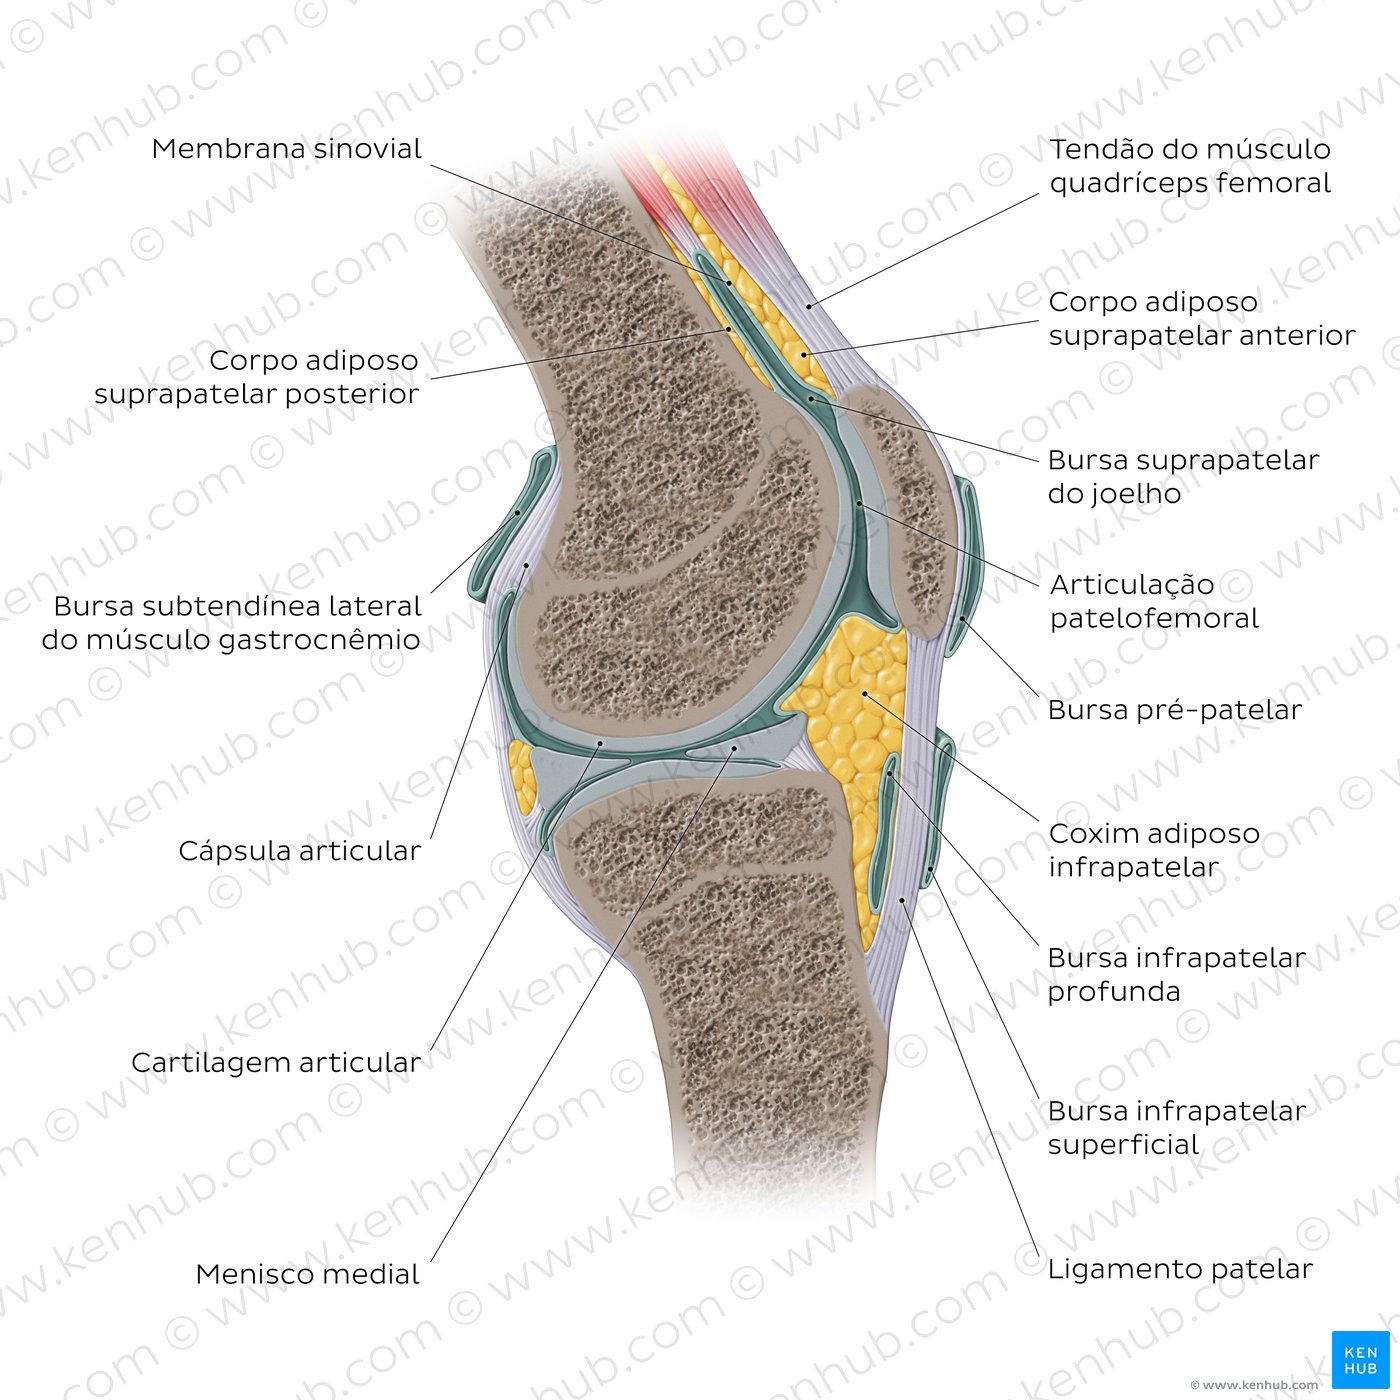 Anatomia da articulação do joelho - vista sagital